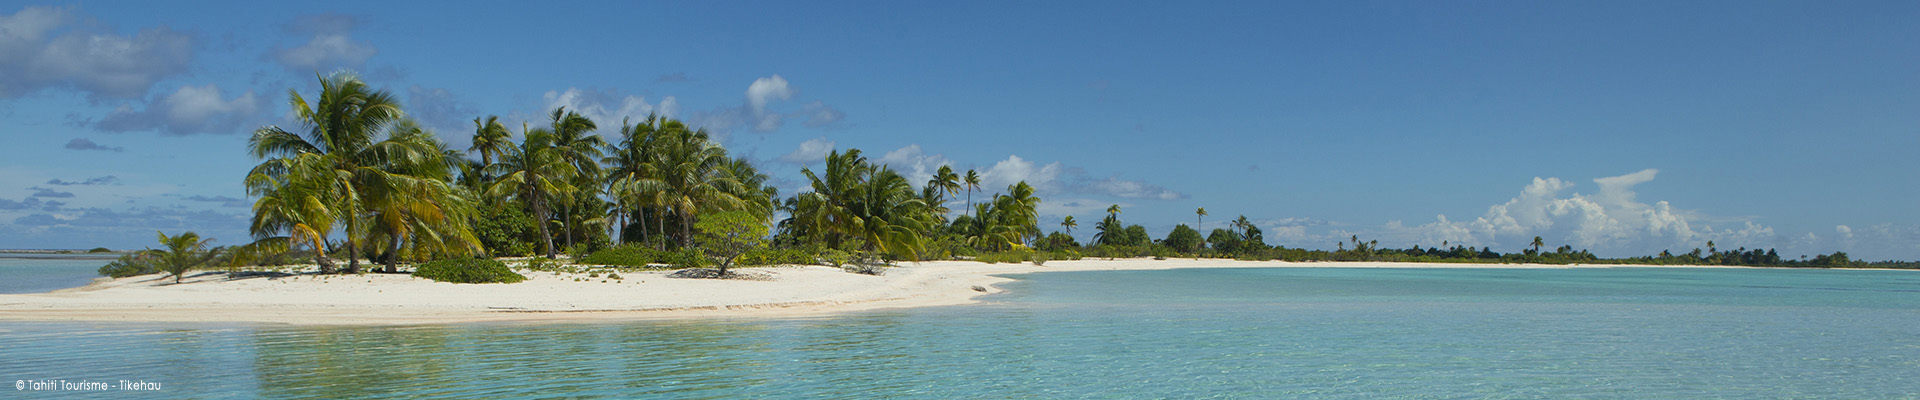 polynesie-tikehau-vacances-croisiere-voilier